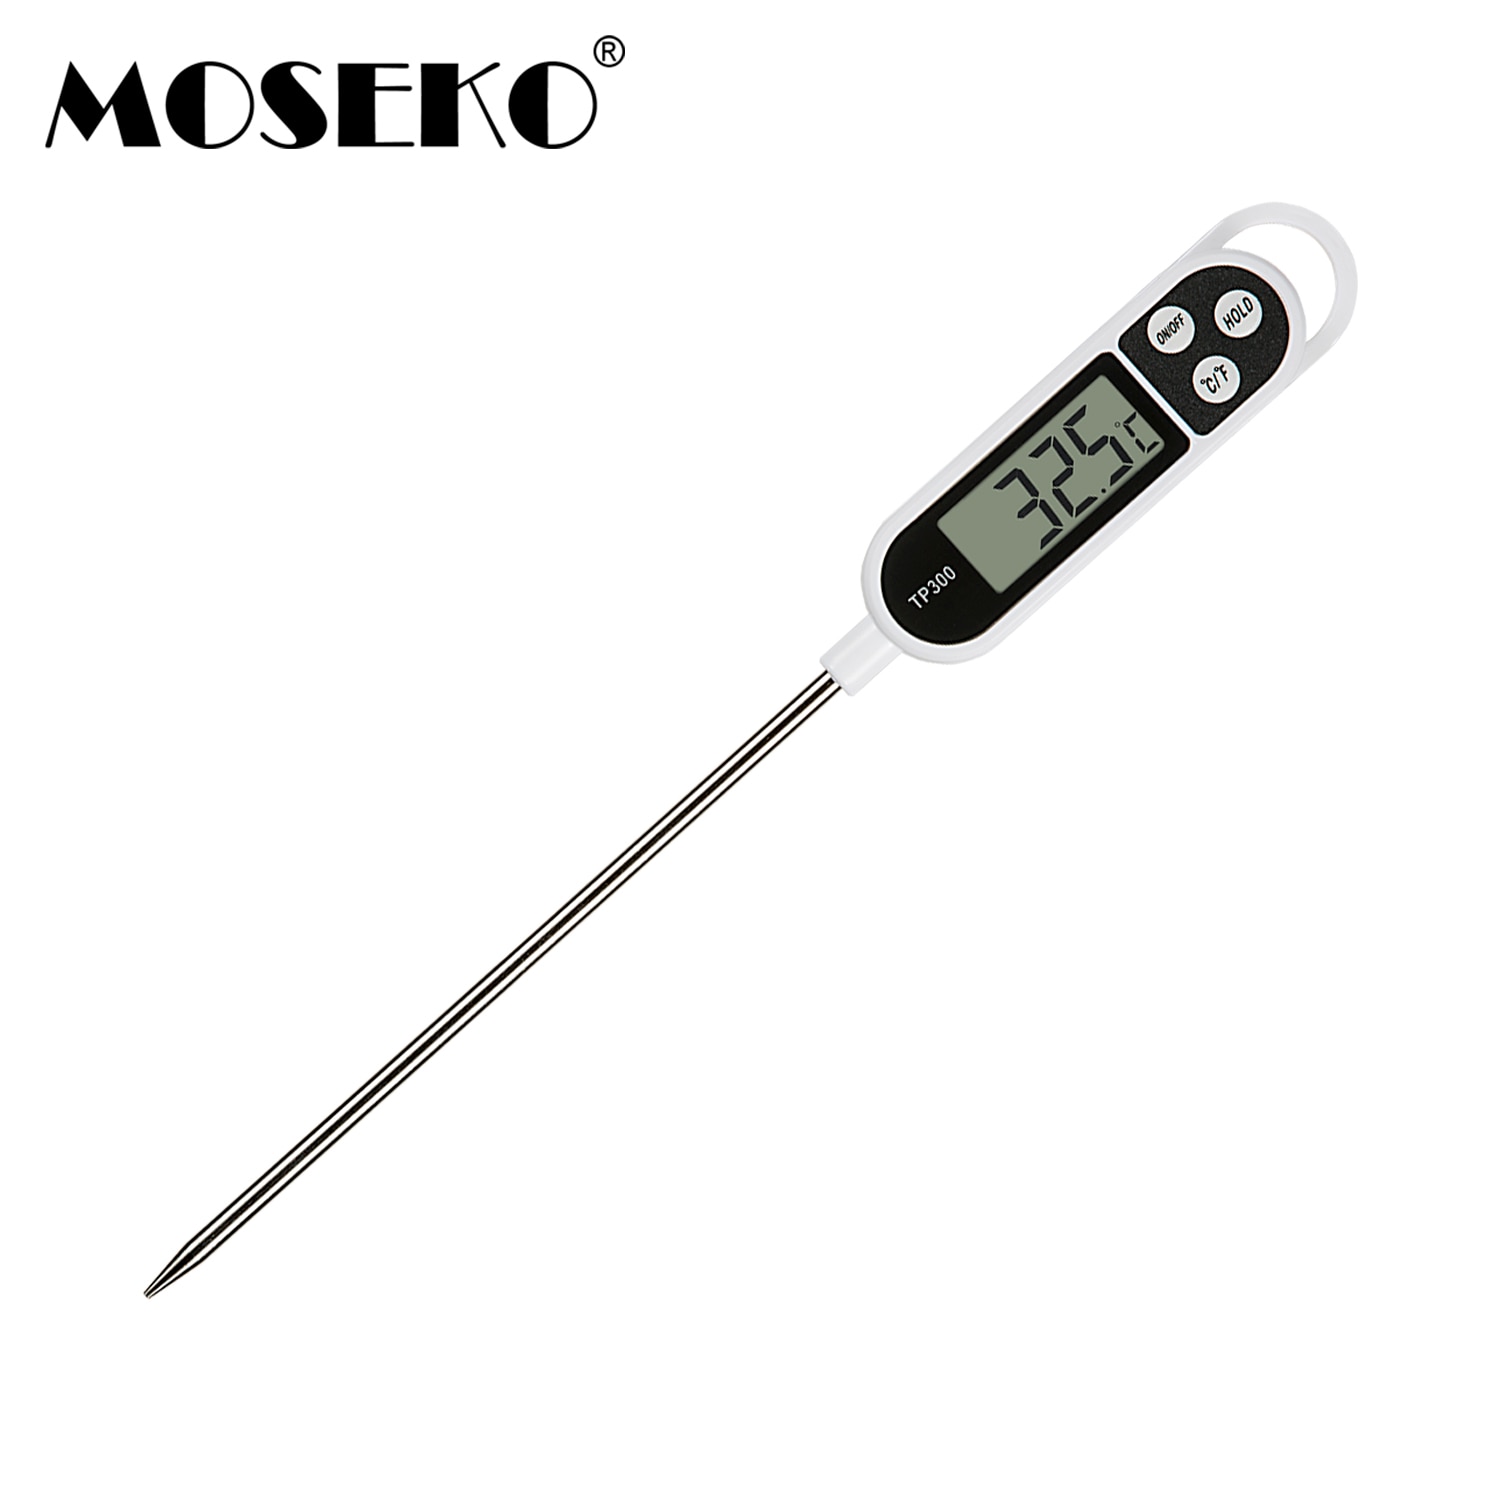 Moseko Digitale Probe Vlees Thermometer Voor Keuken Bbq Water Melk Koken Grill Barbecue Oven Voedsel Thermometer Kitchen Tools